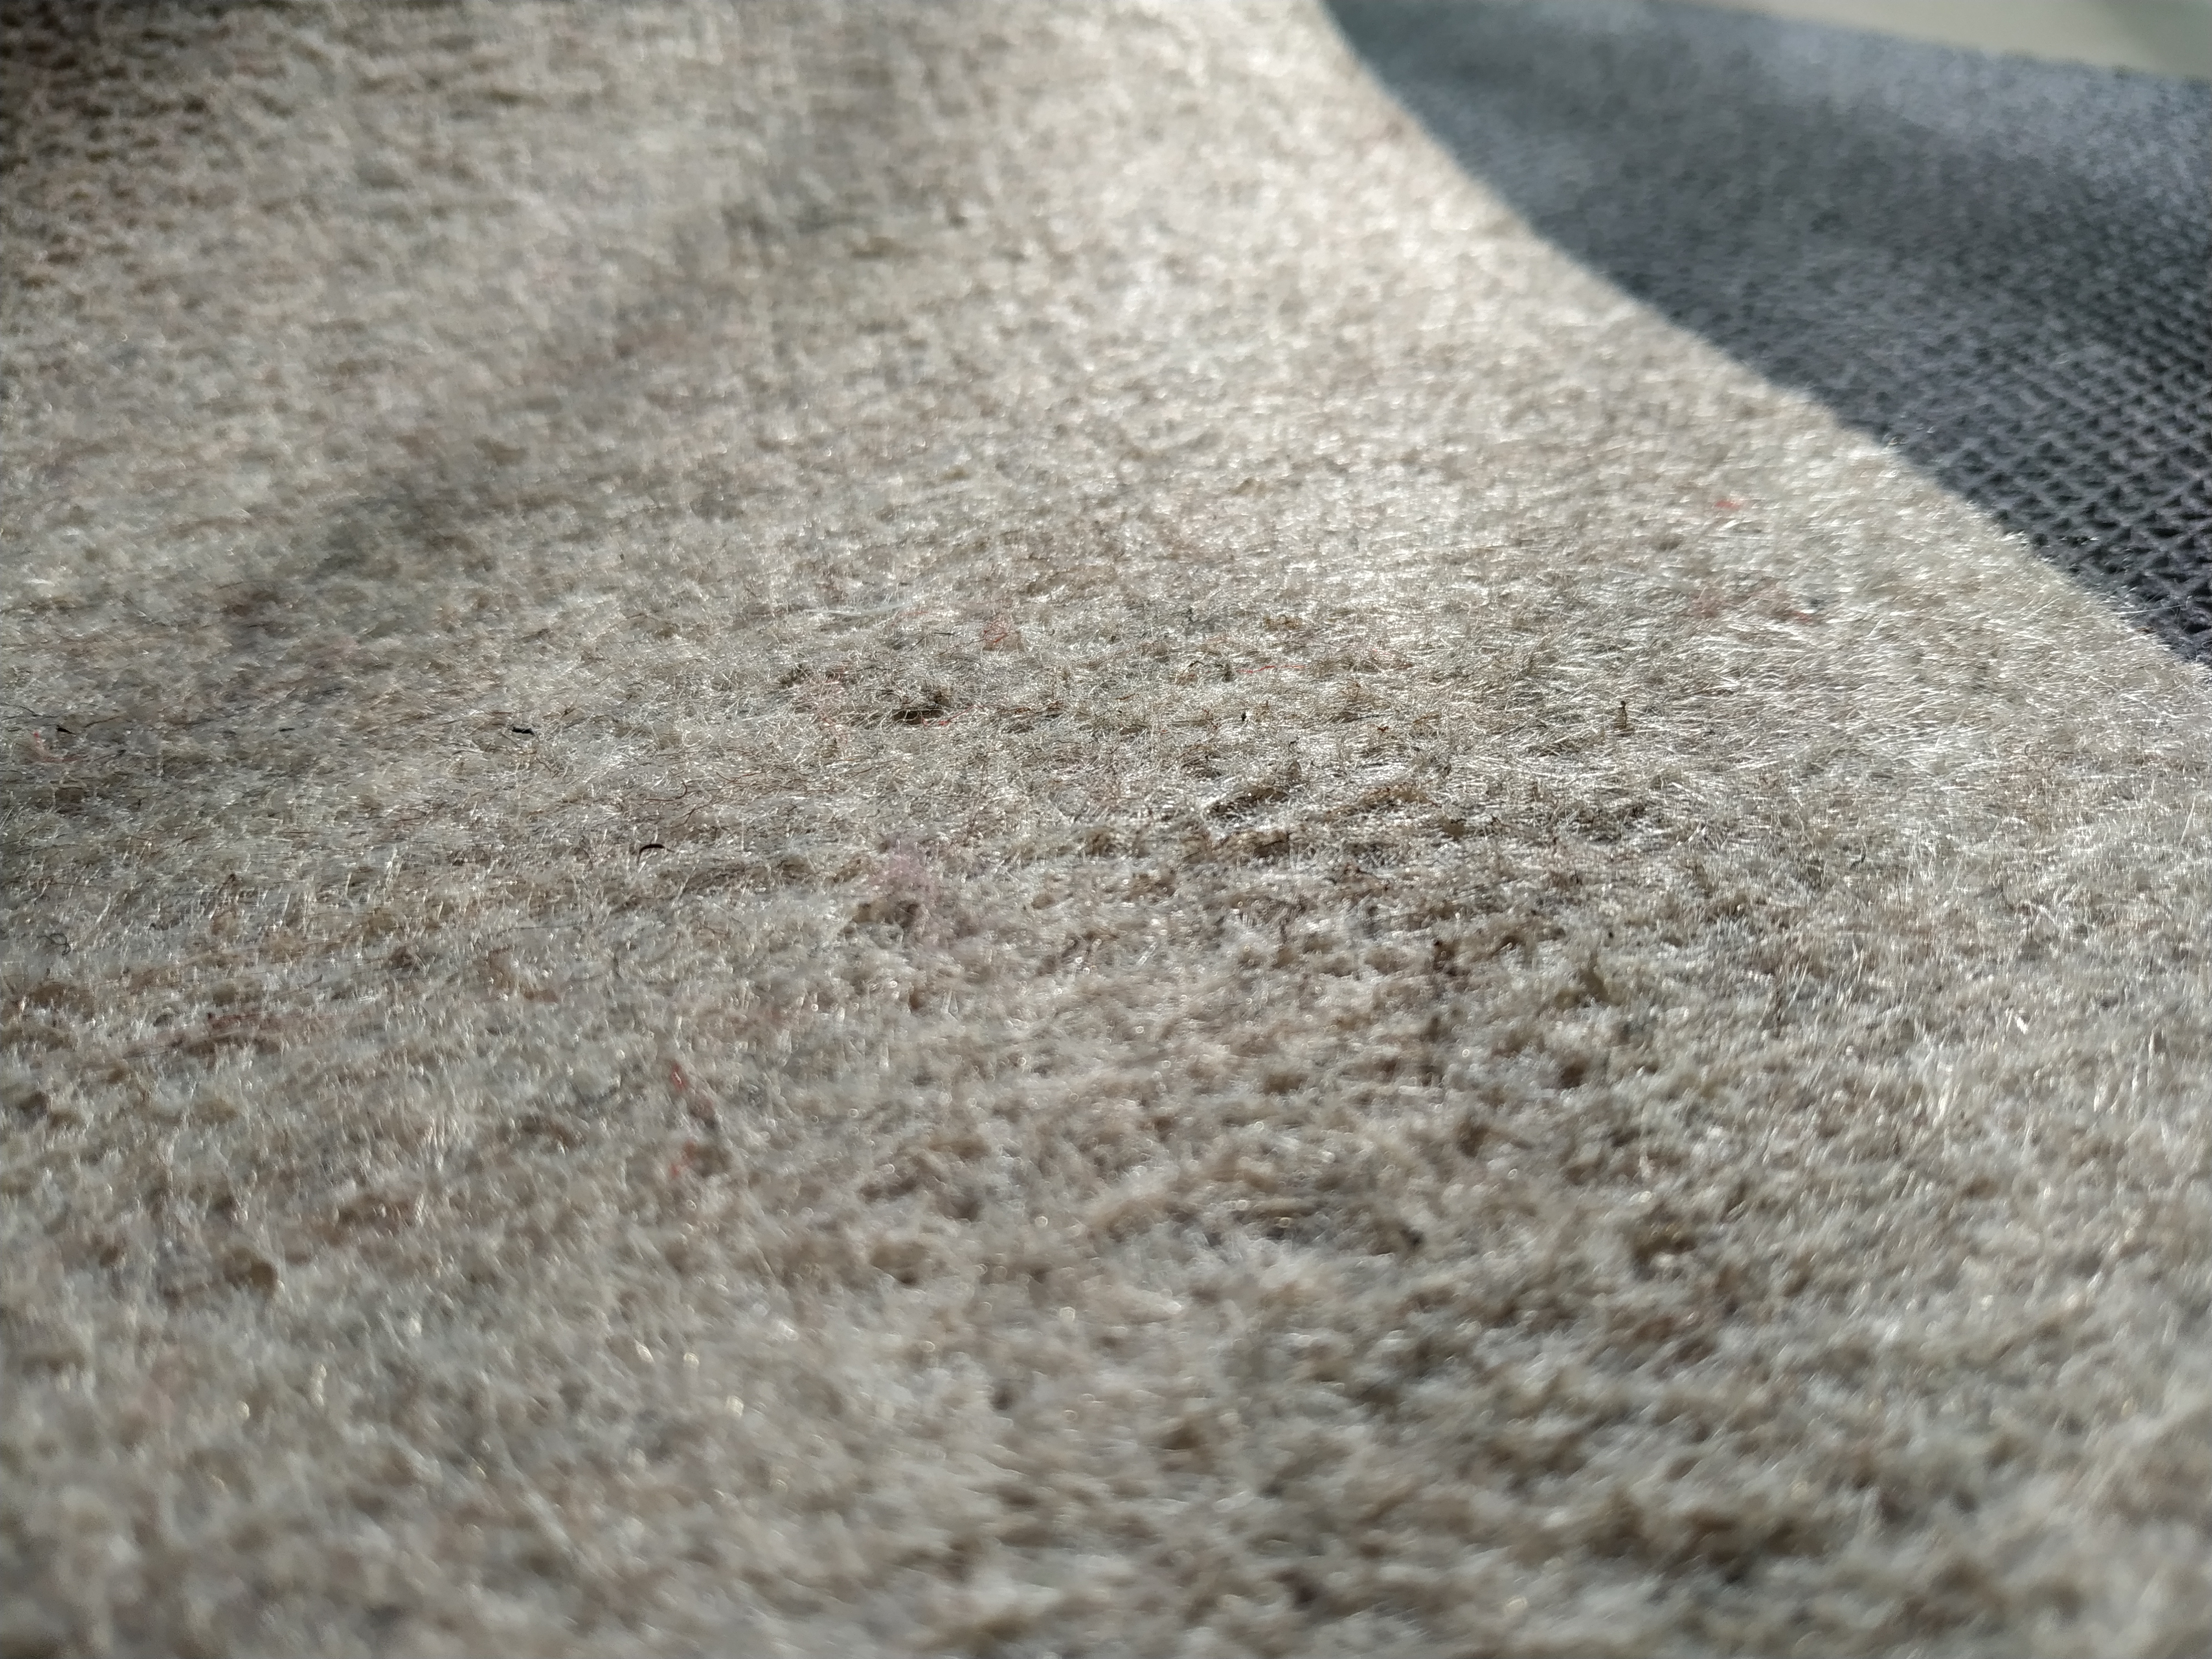  Tapis de tapis à double couche, offre une protection et un rembourrage pour les sols en bois dur ou en carrelage.